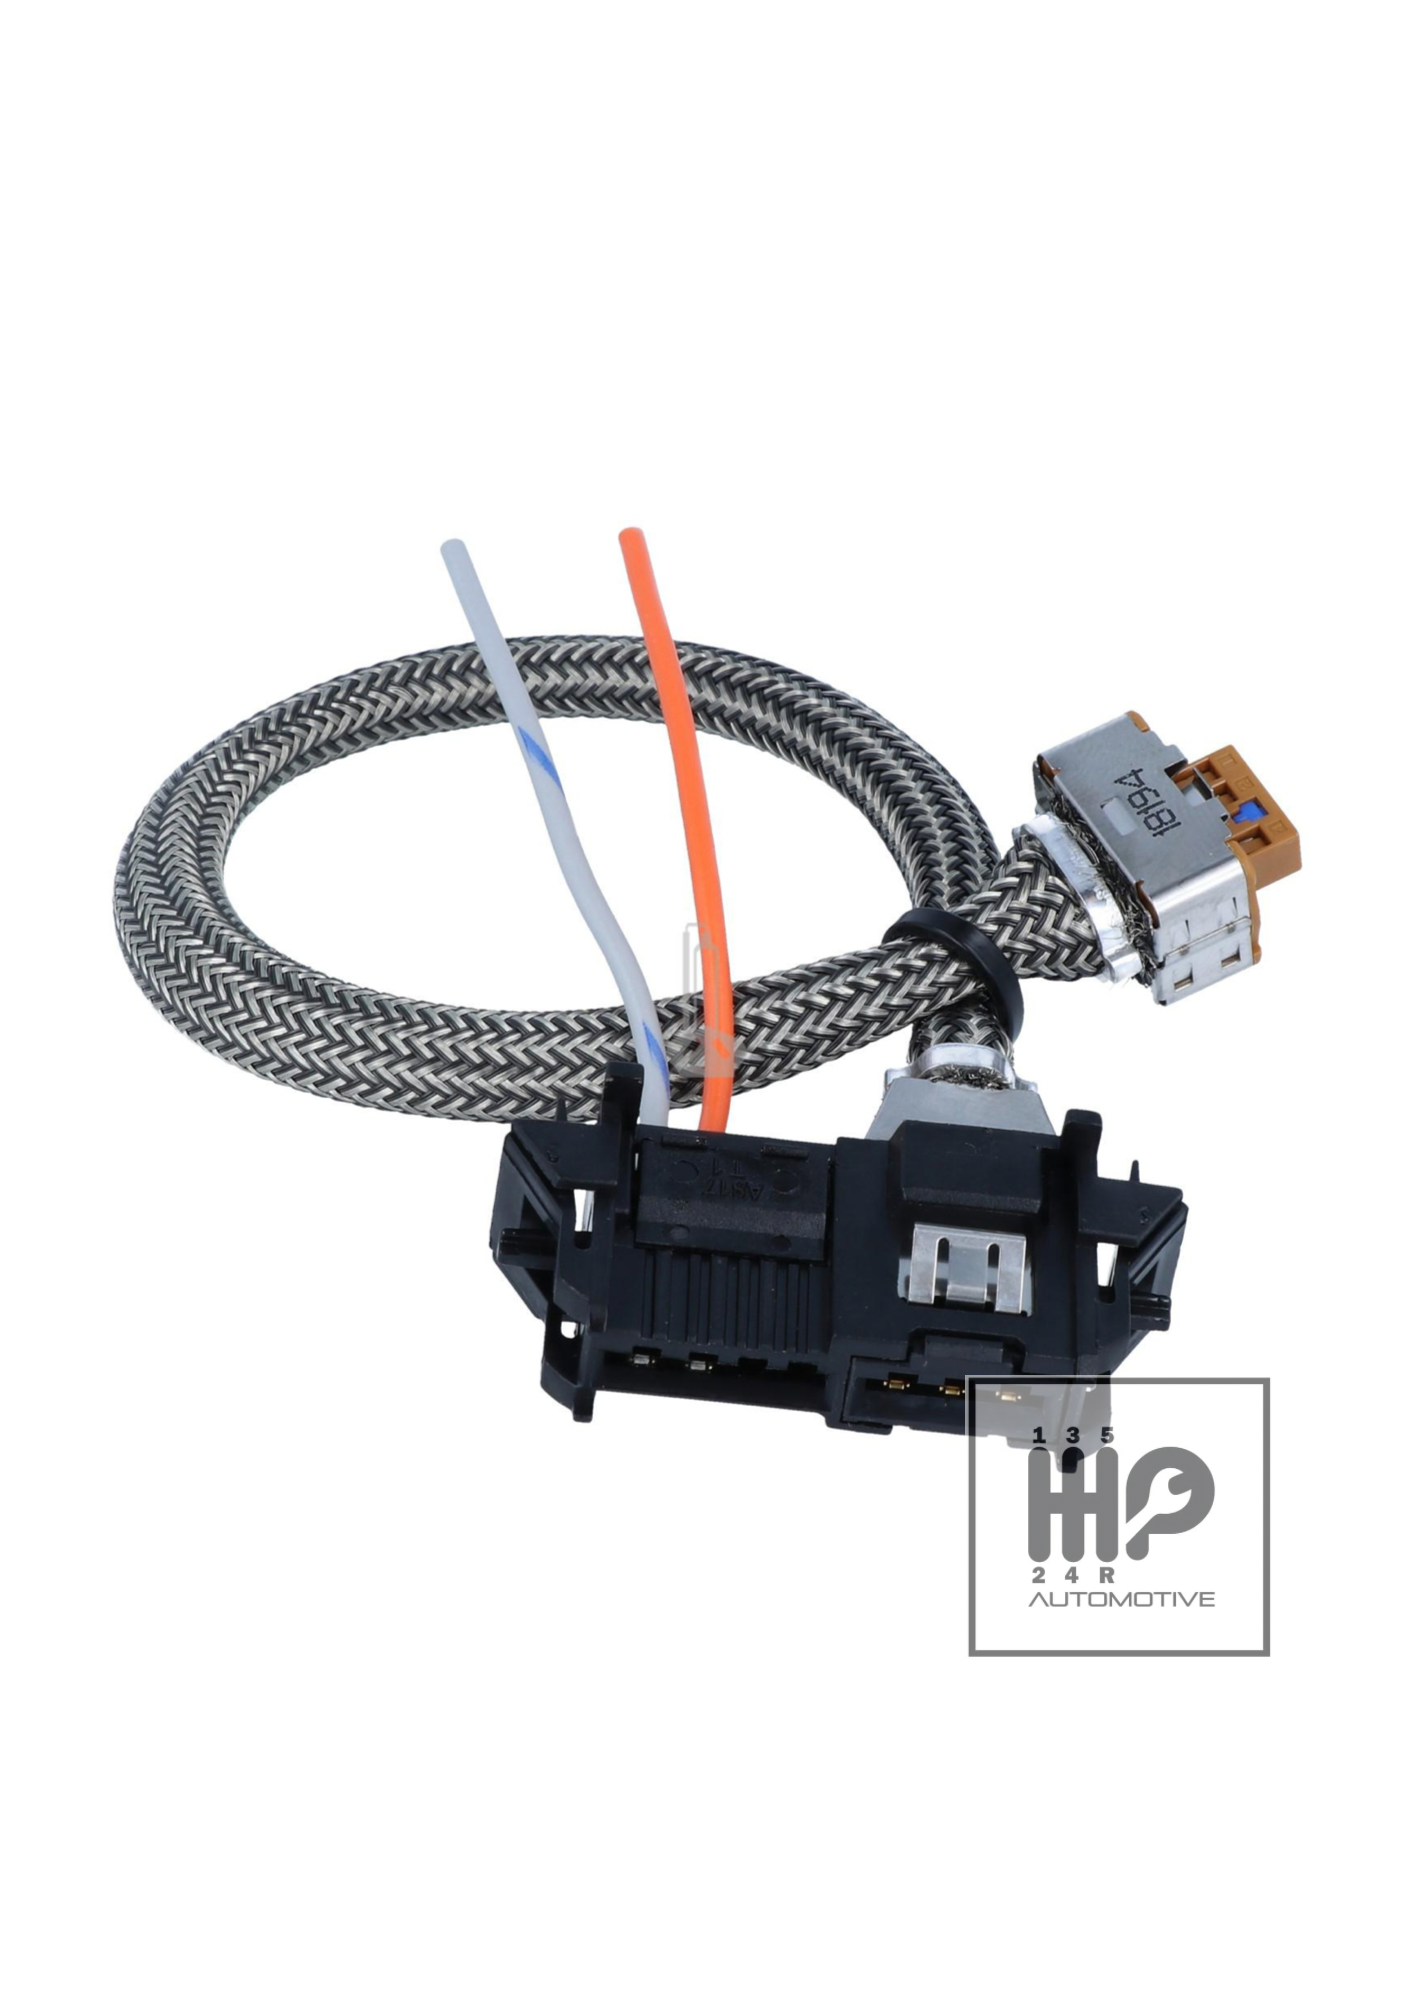 Enchufe cable xenon para VALEO 6g 89034934 BMW SEAT RENAULT